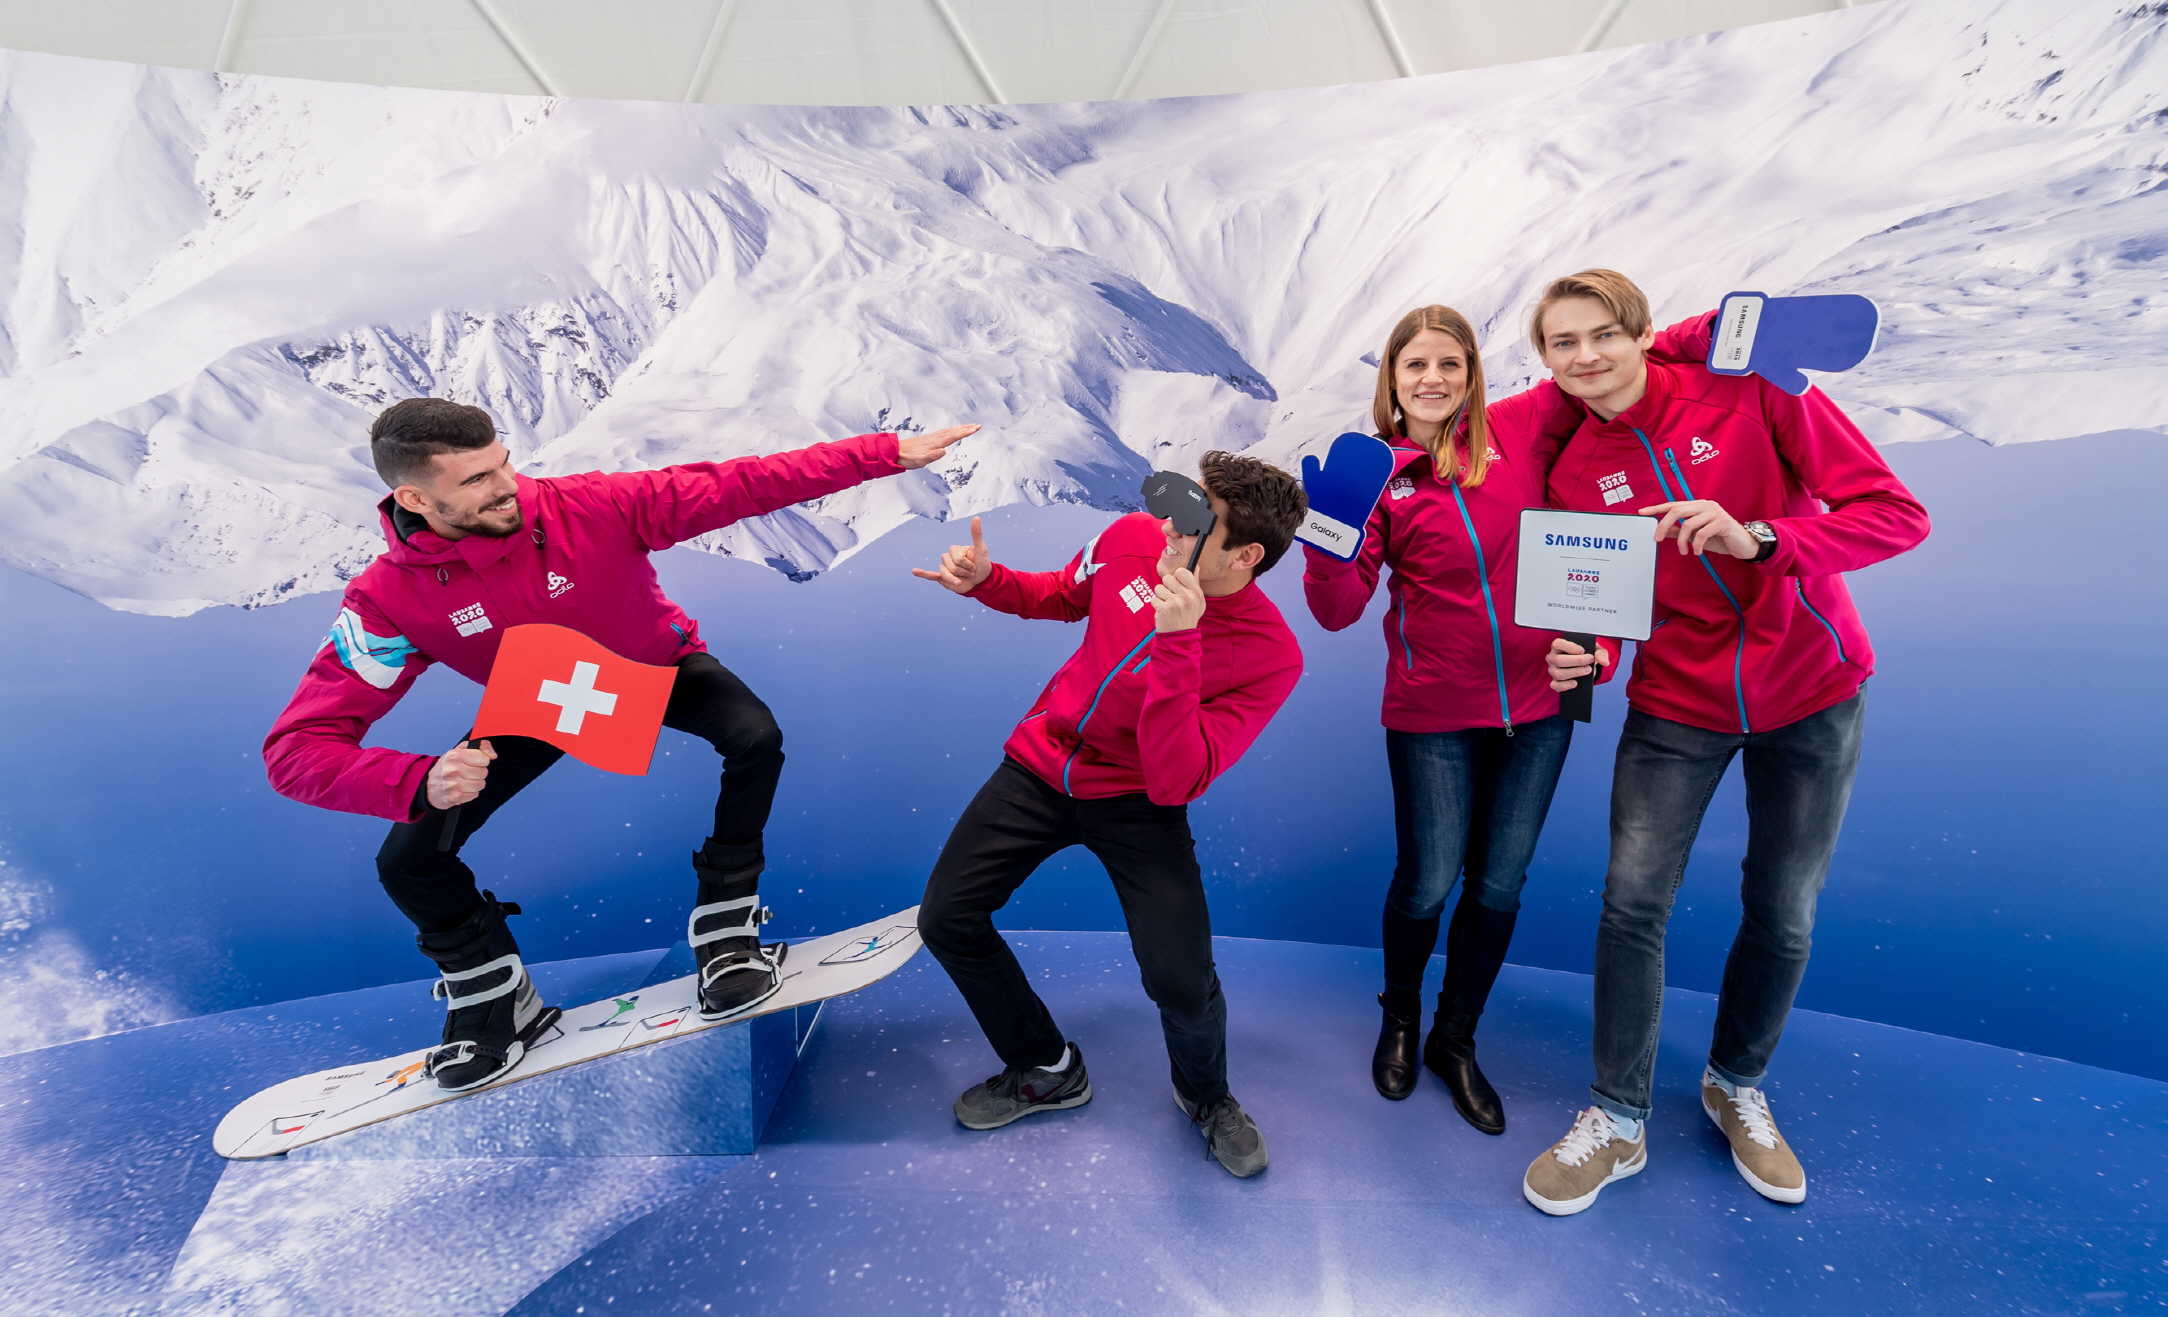 9일부터 22일까지 열리는 ‘2020 로잔 동계 유스 올림픽’ 기간 동안 삼성전자가 스위스 로잔에서 운영하는 ‘삼성 올림픽 체험관’에서 방문객들의 최신 모바일 기술을 경험해보고 있다. 삼성전자 제공